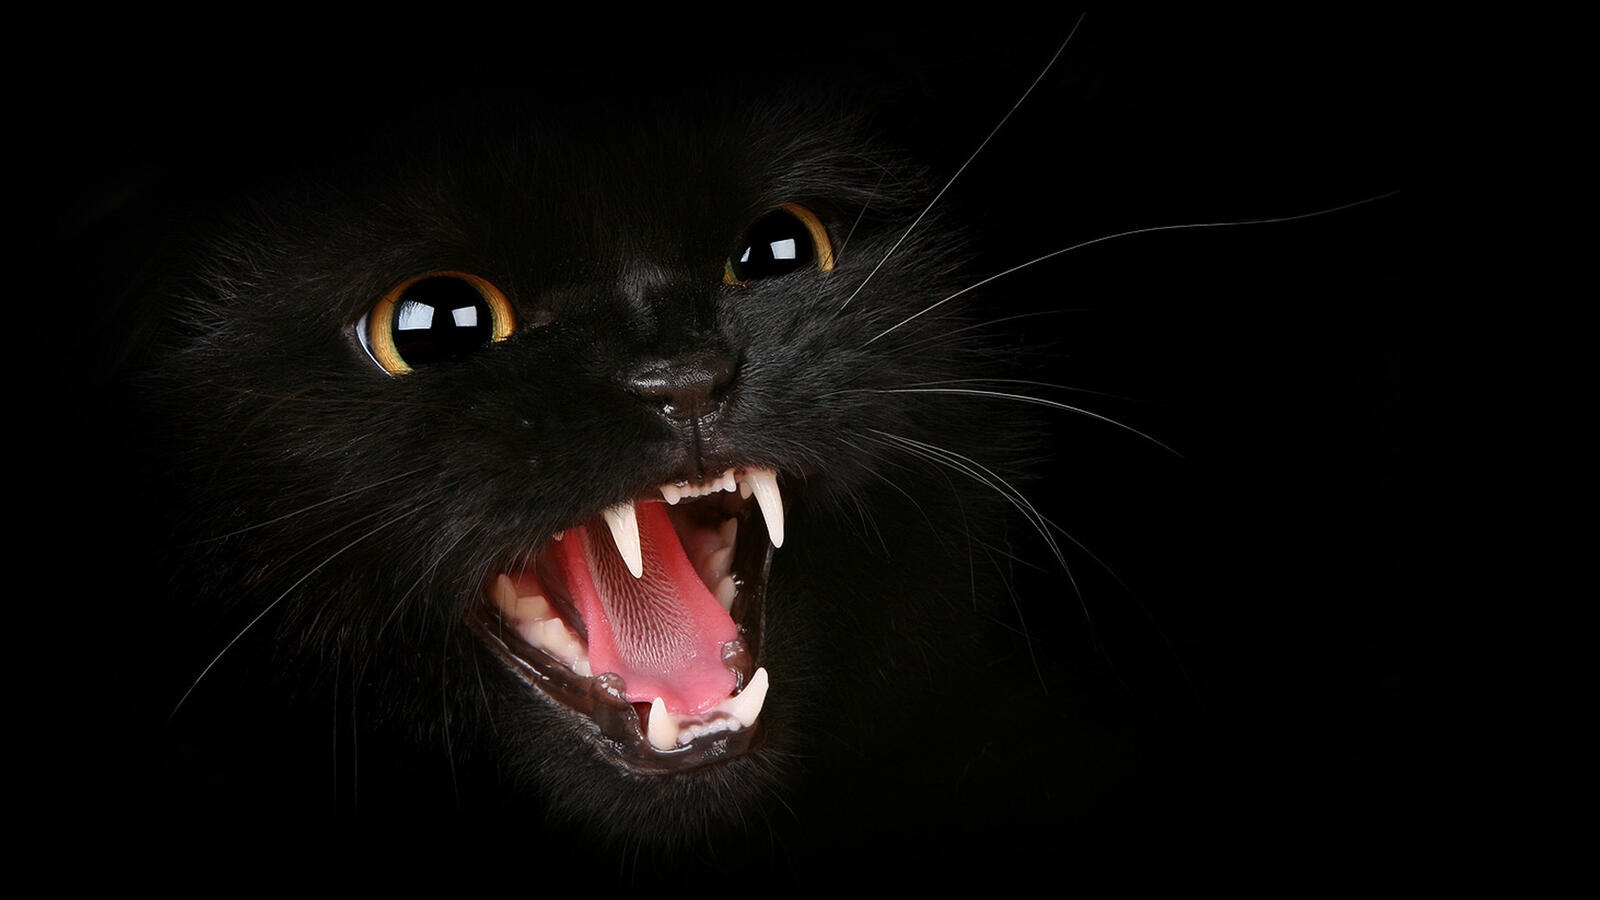 Бесплатное фото Черная кошка на черном фоне шипит на зрителя